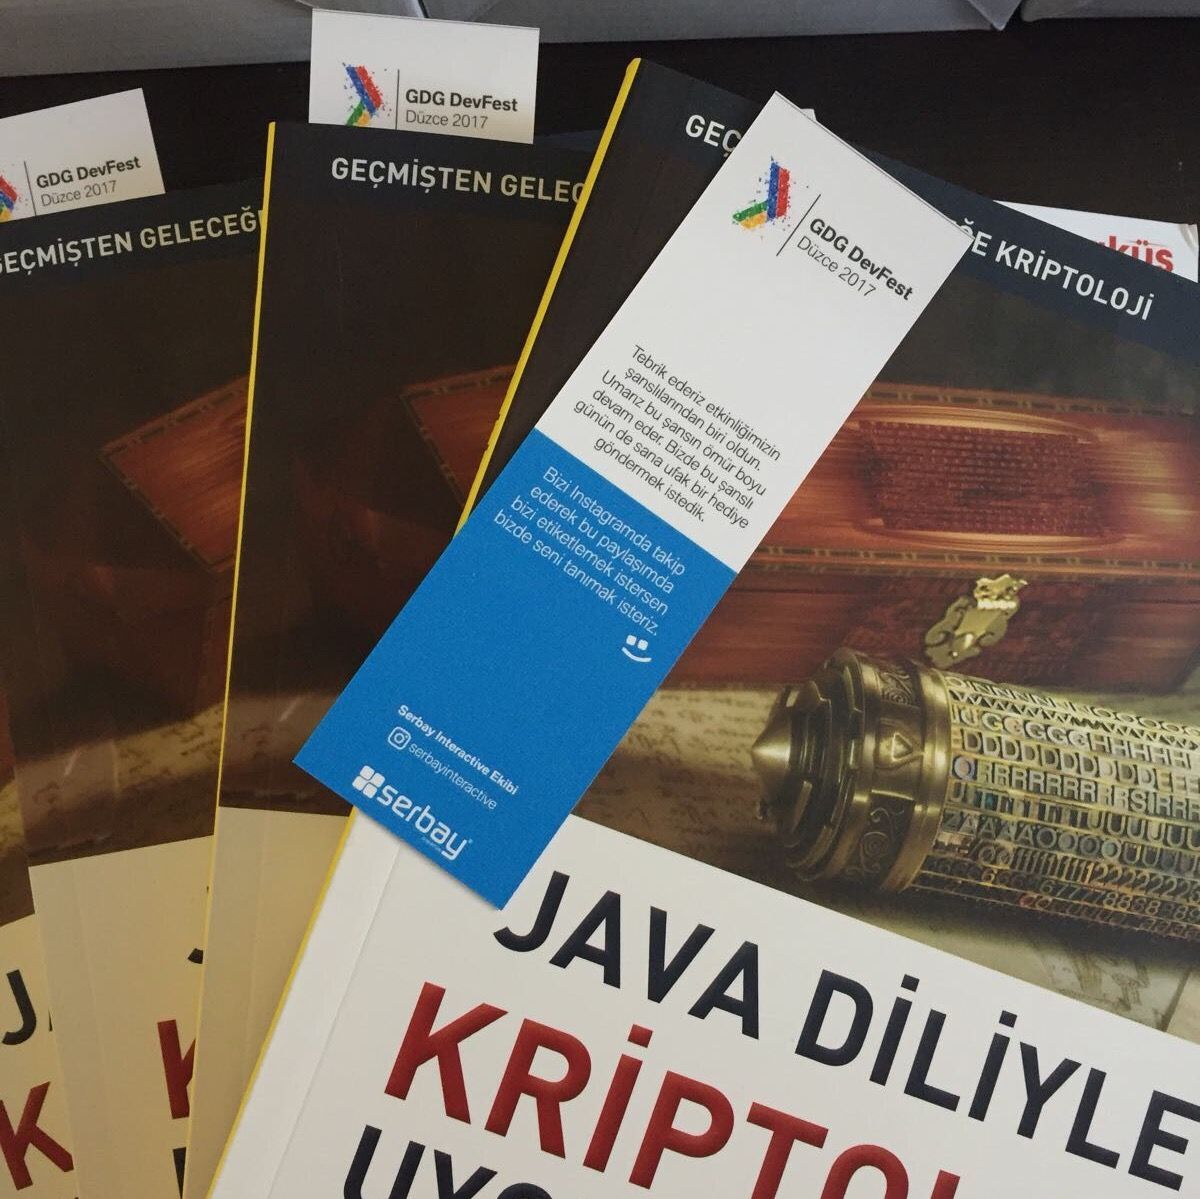 Etkinliğimizin şanslılarına Hüseyin Bodur'un Java Diliyle Kriptoloji Uygulamaları kitabını hediye ettik.